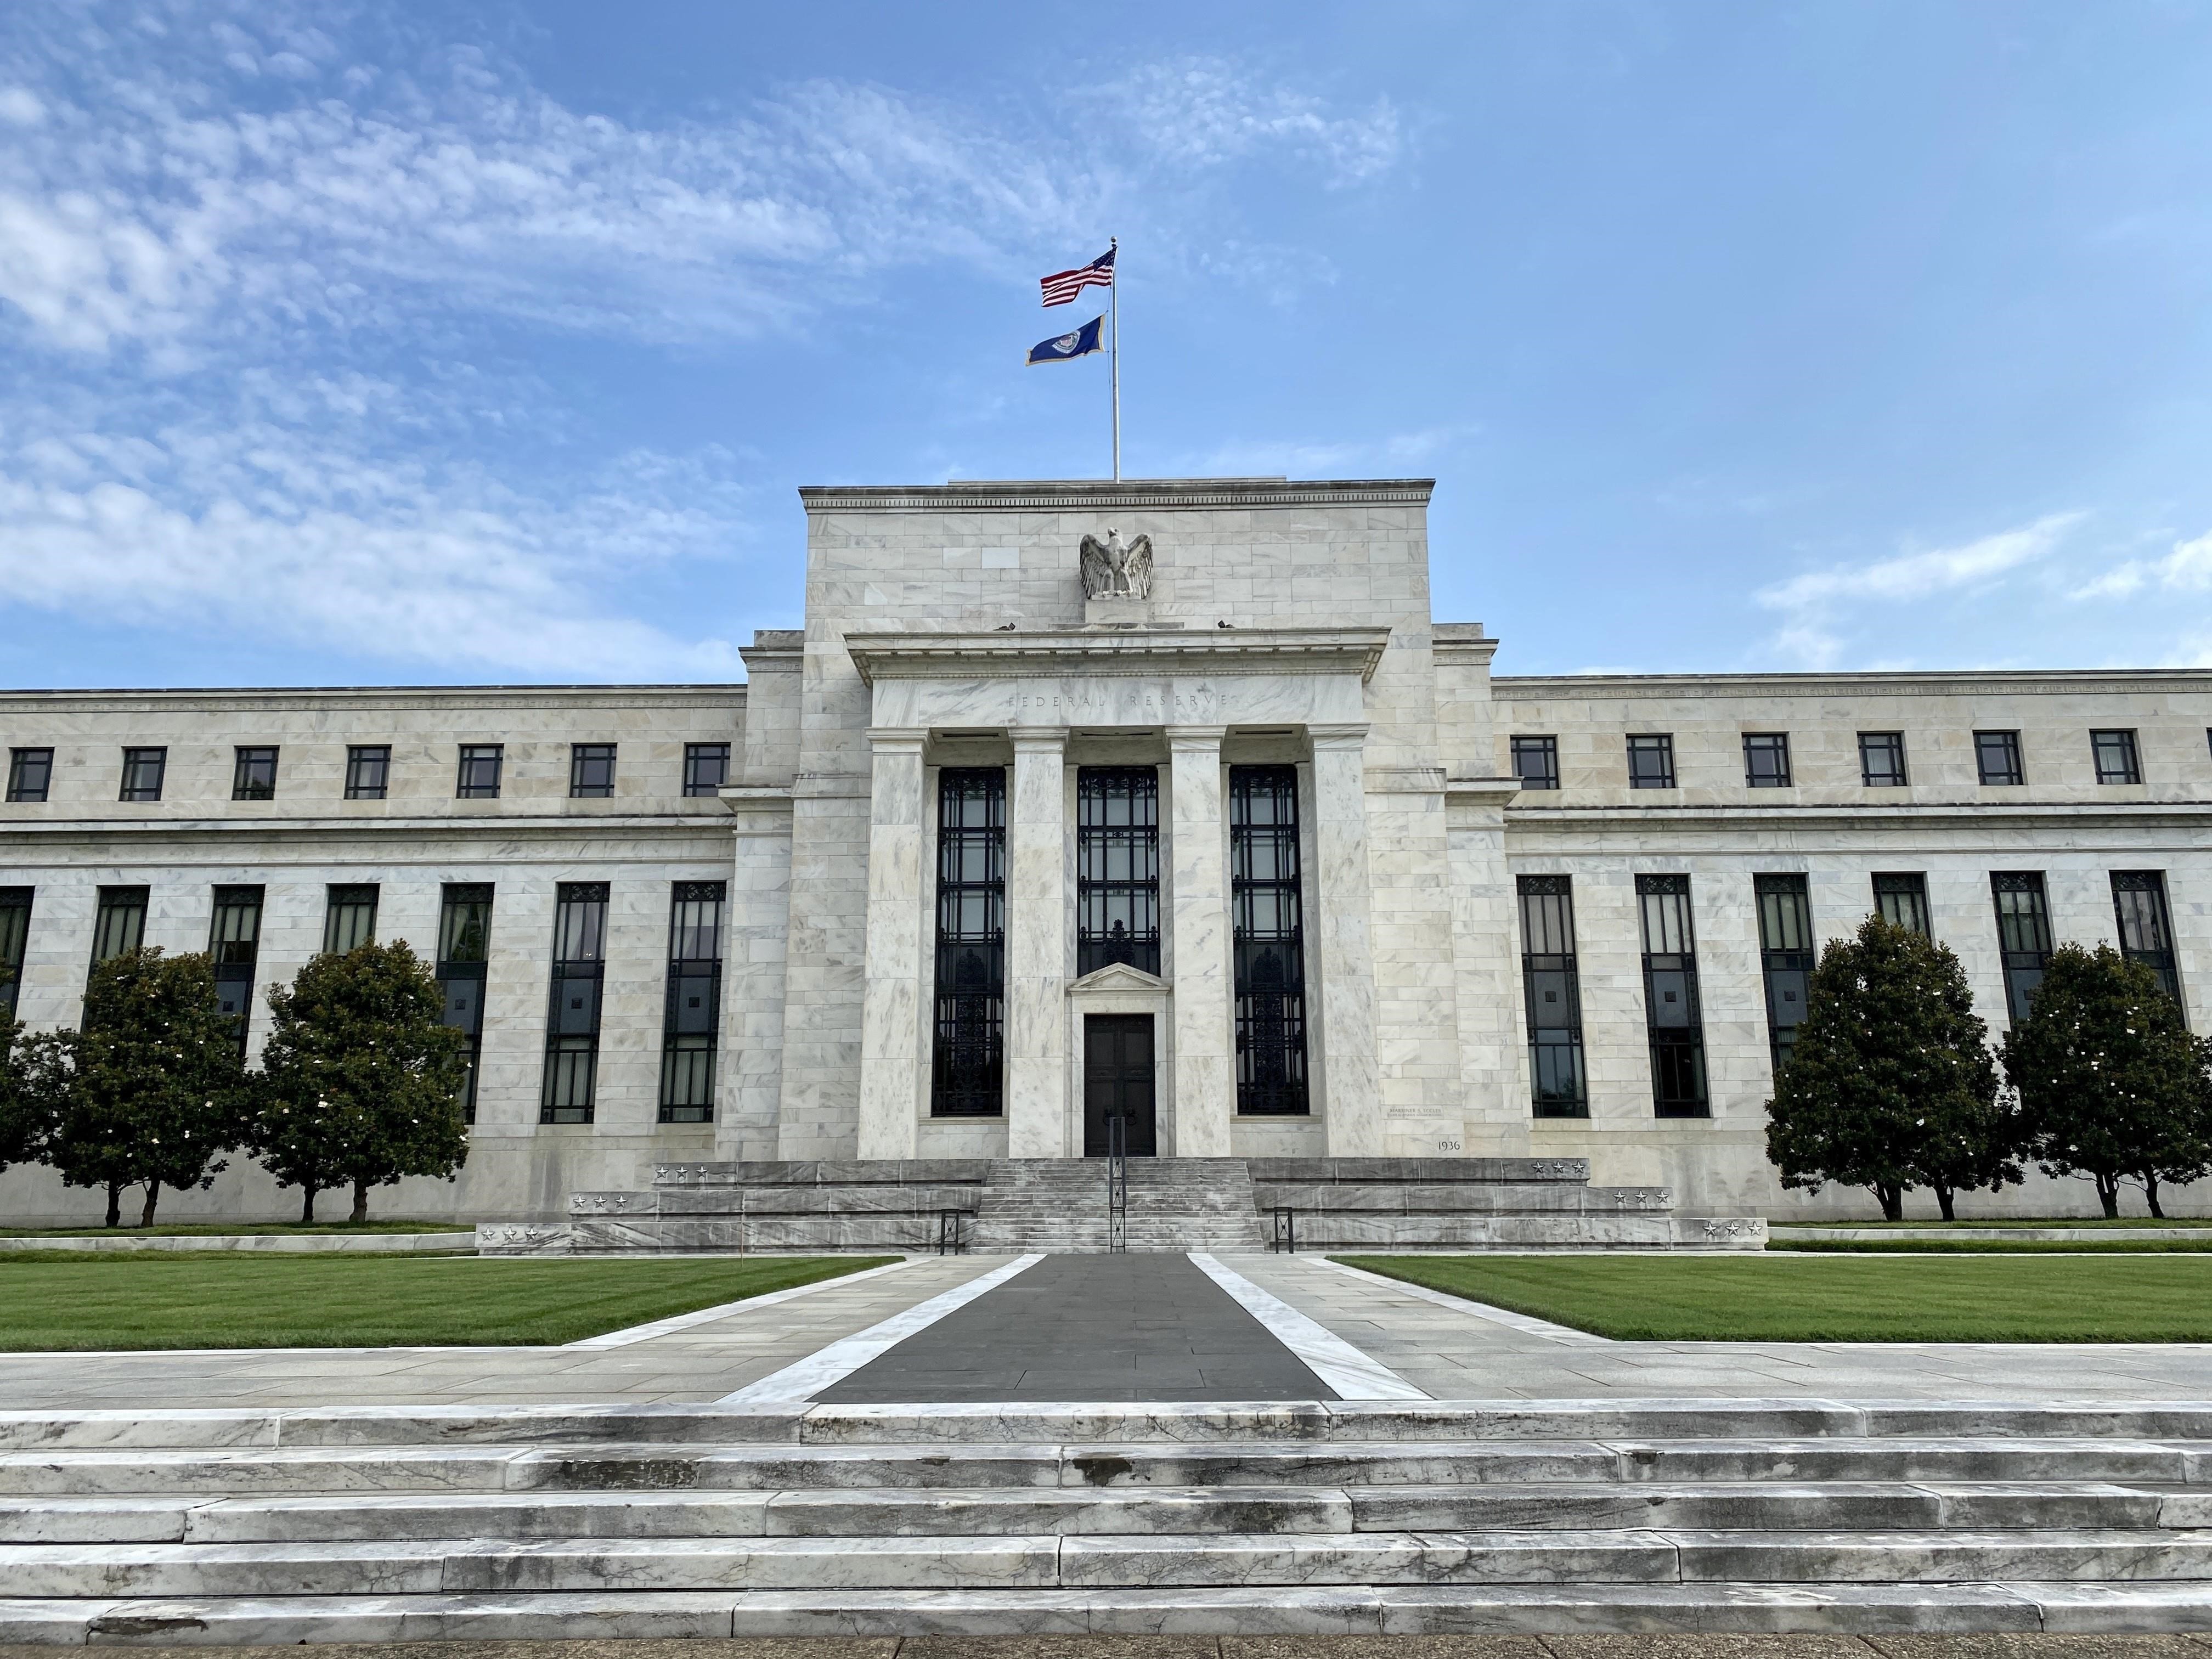 
Hôm 16/5 Cục Dự trữ Liên bang Mỹ quyết định nâng lãi suất lên mức cao kỷ lục kể từ năm 1994 đến nay
